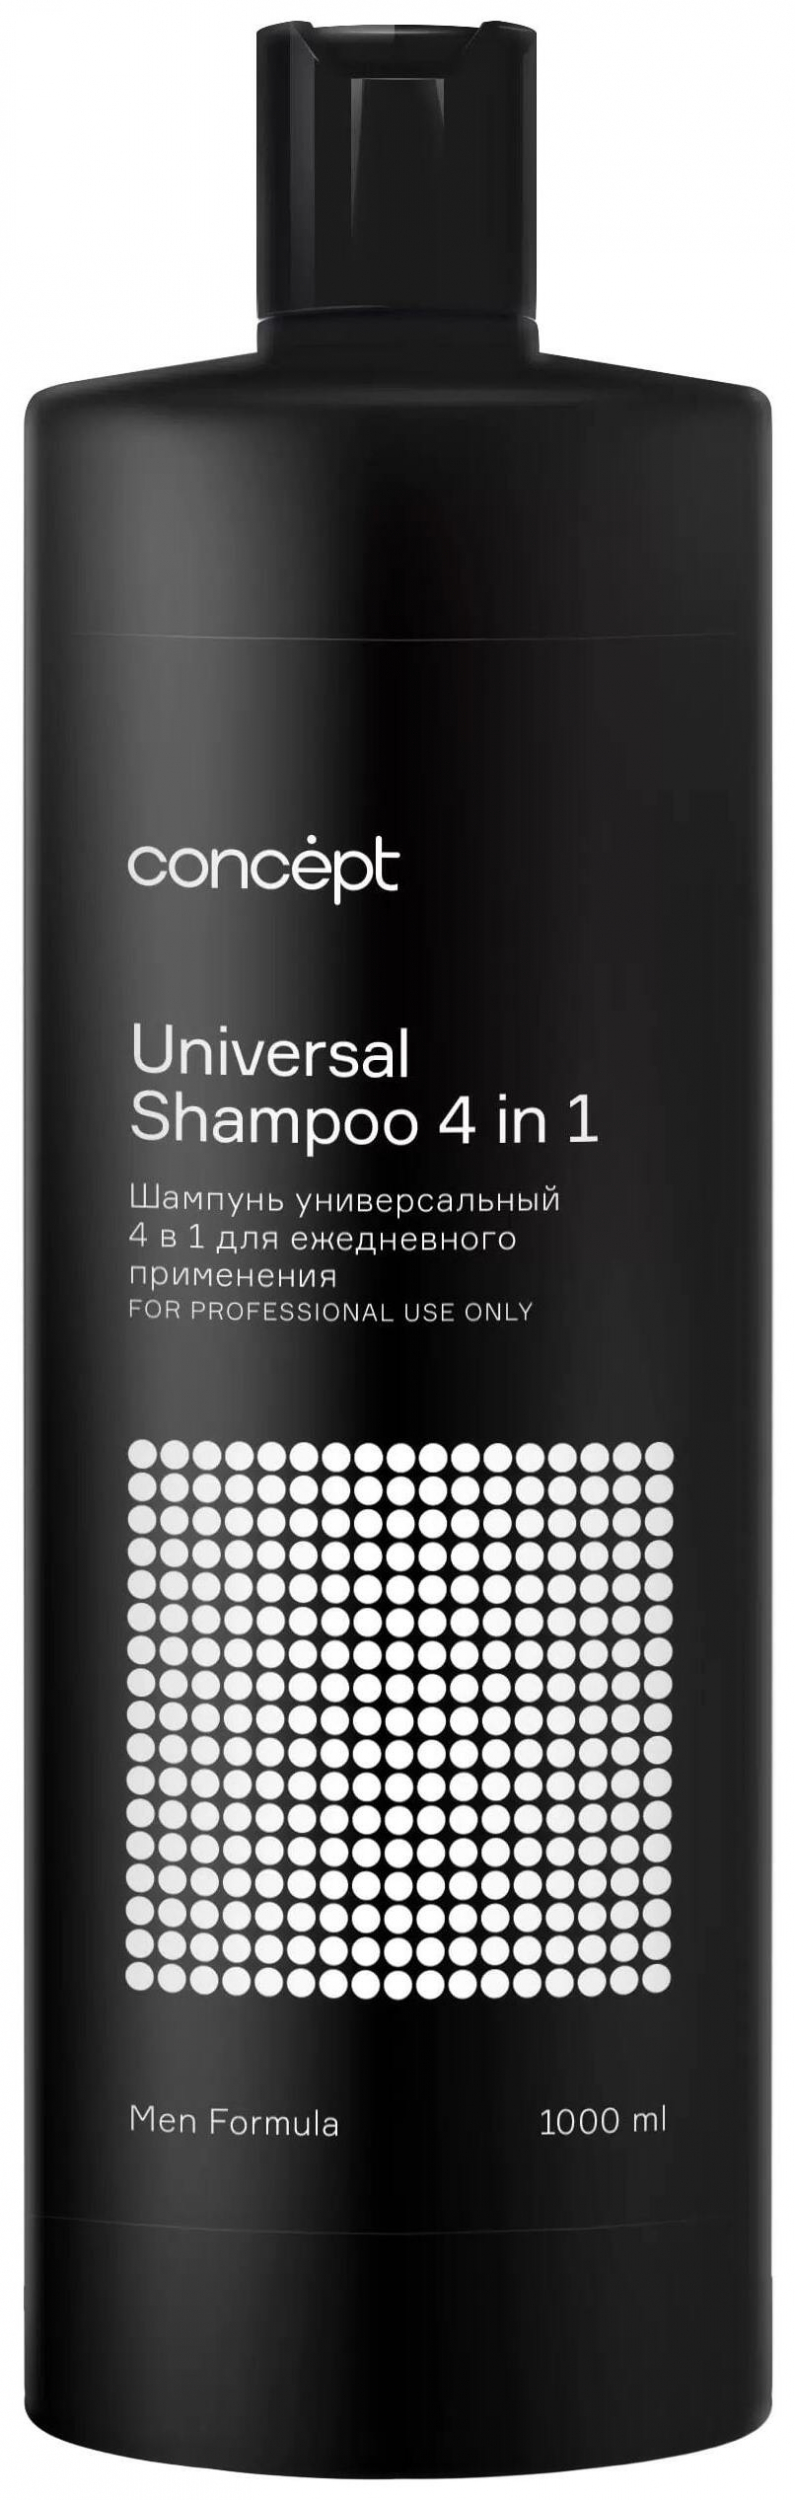 Шампунь универсальный 4 в 1 для ежедневного применения Men Universal Shampoo Concept